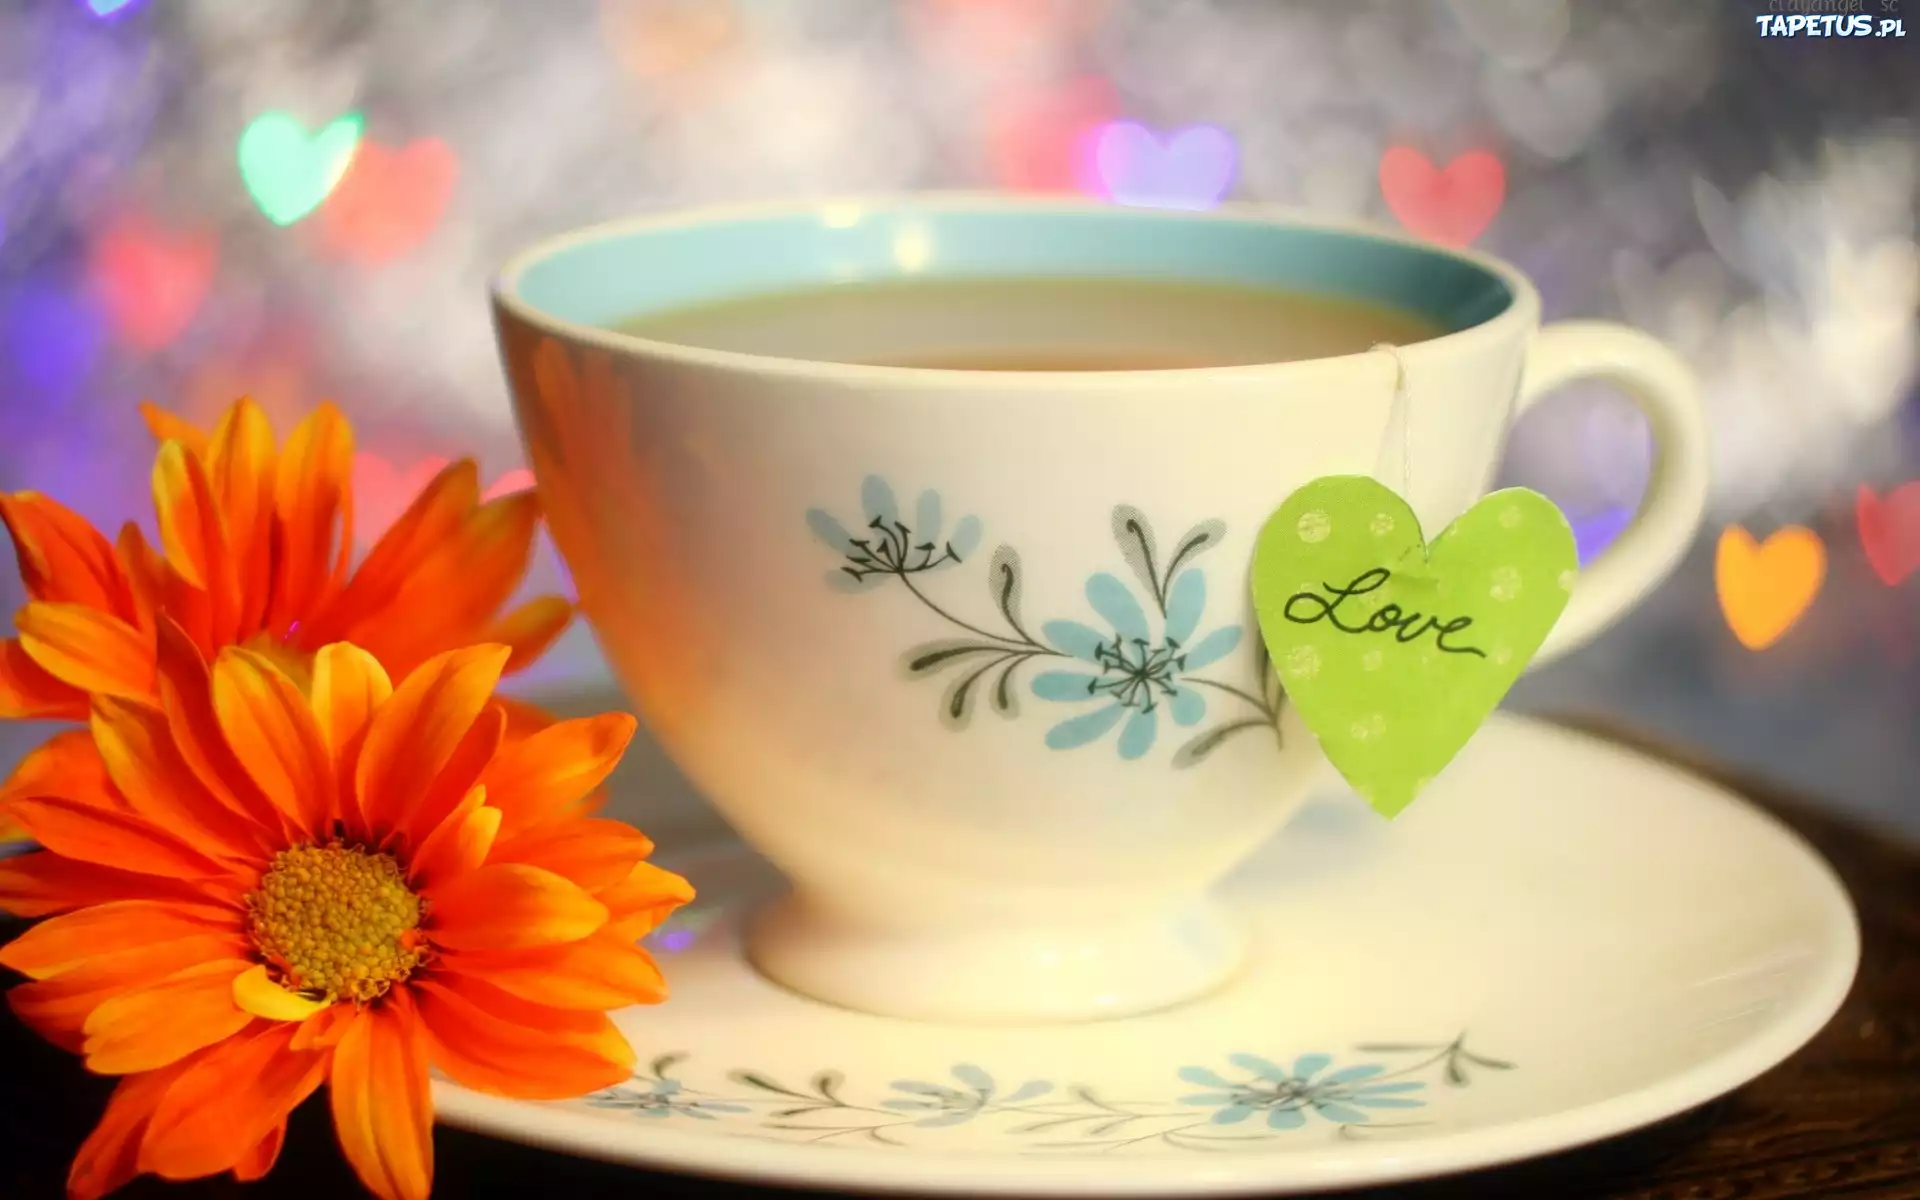 Доброе утро хорошего дня чаи. Цветы в кружке. Чай с цветами. Чашка чая. Доброе утро с чаем.